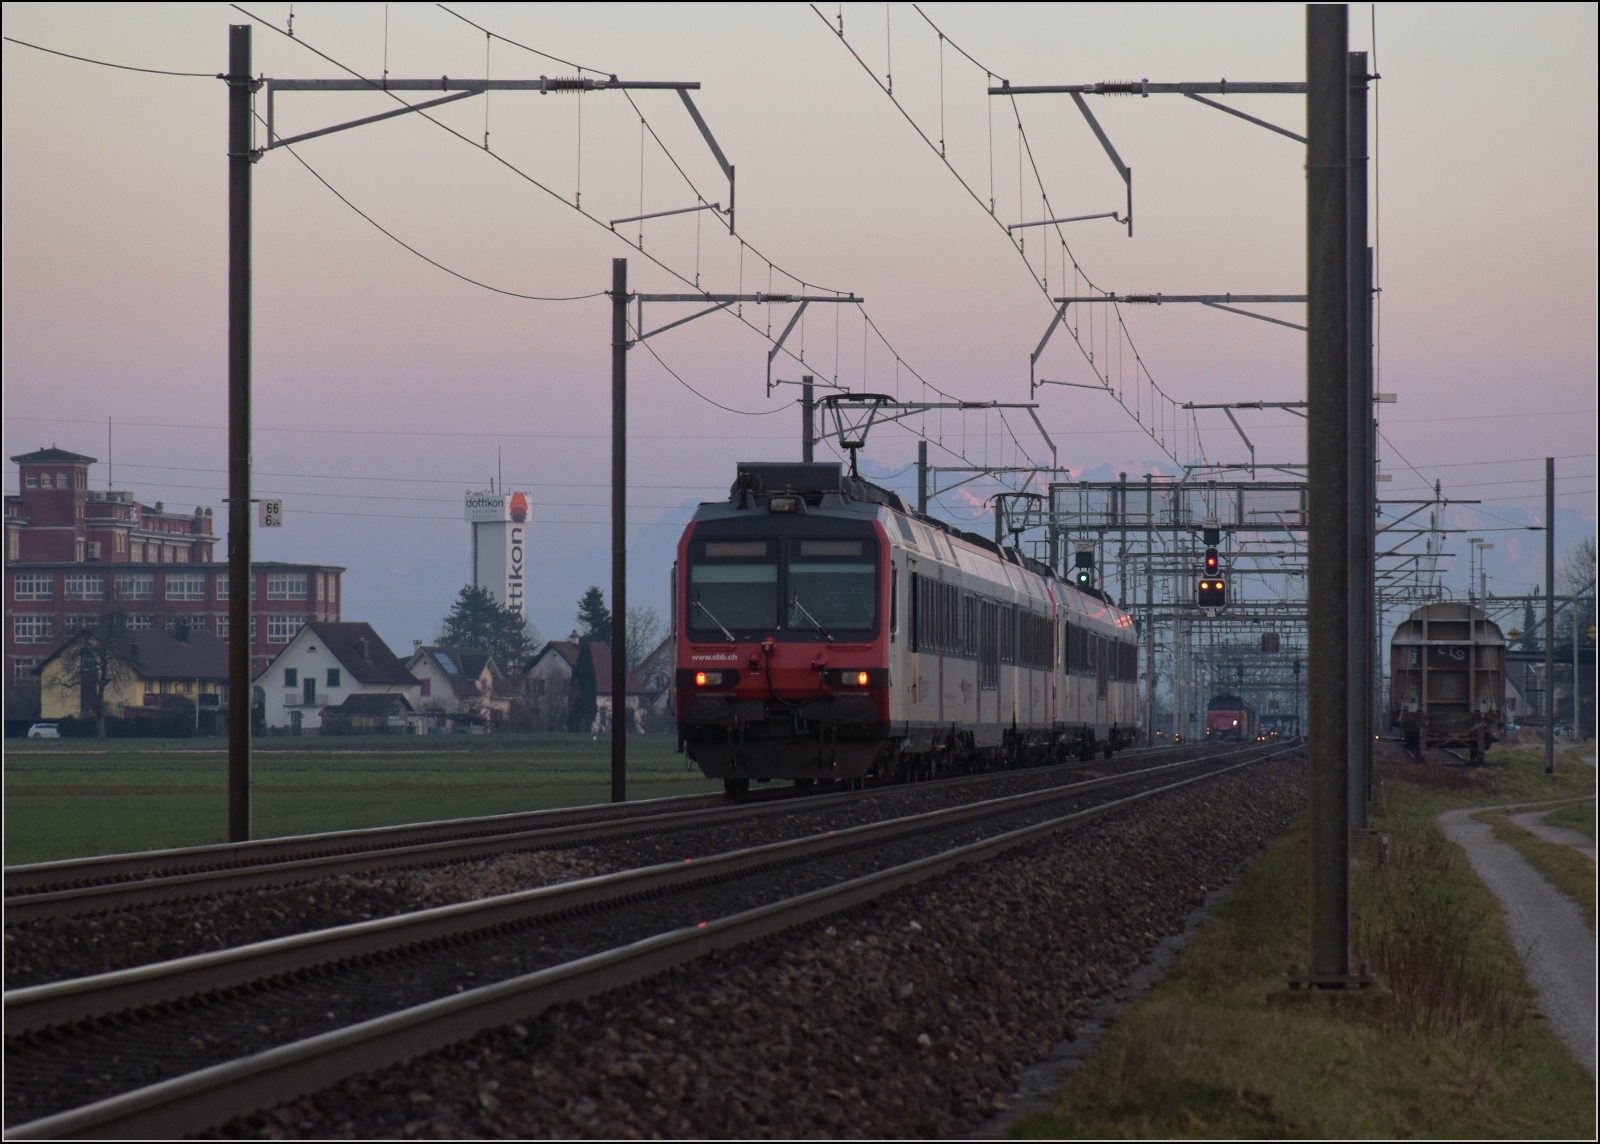 Am fast dauerverschlossenen Bahnbergang.

Zwei unbekannt gebliebene RBDe 560 in Hendschiken. Februar 2023.